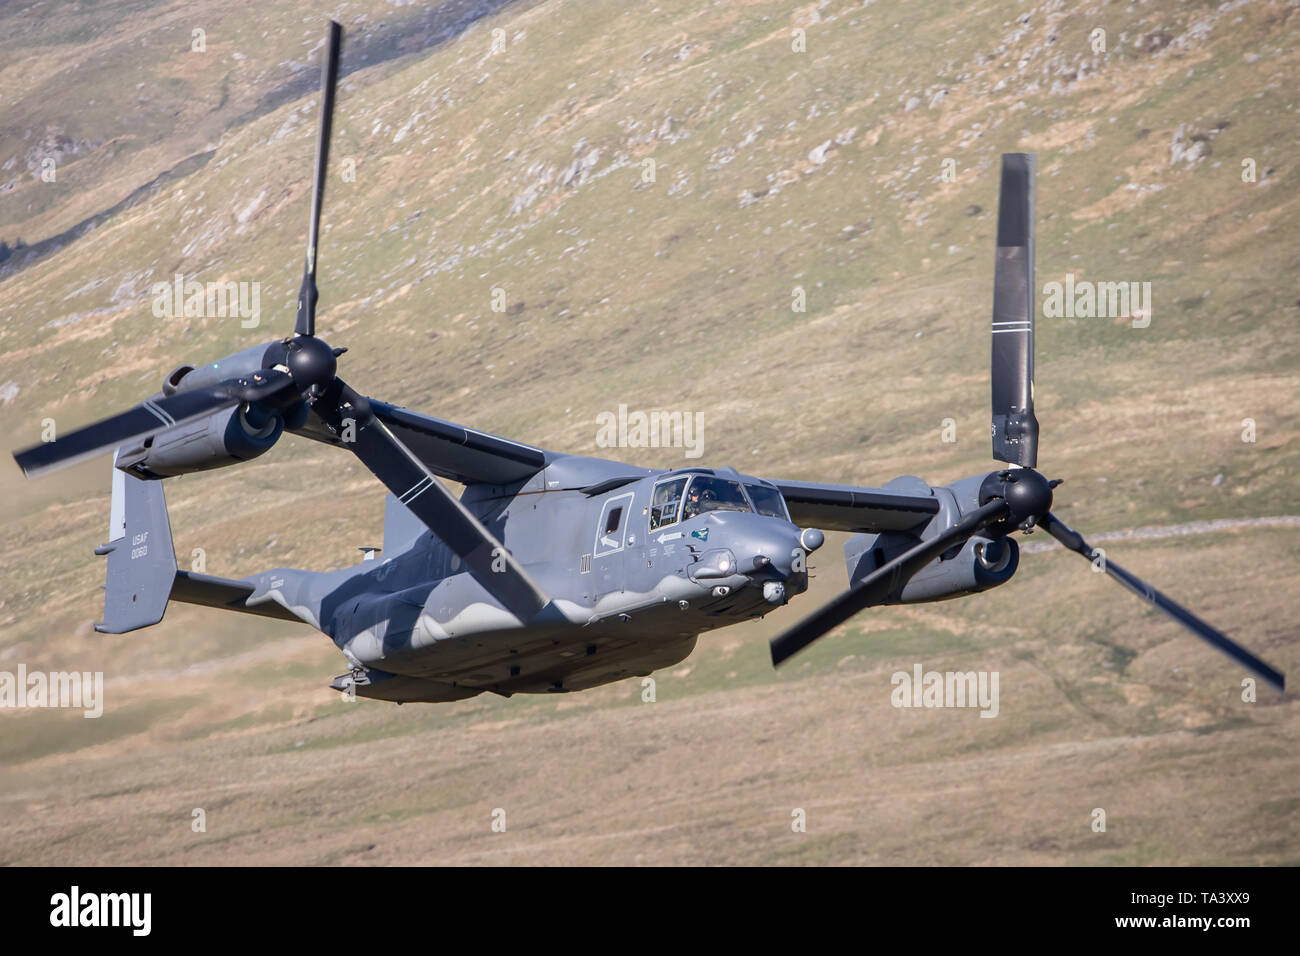 Un CV22 Osprey Bell-Boeing USAF fait un faible niveau passent par Mach Loop, près de Dolgellau, Pays de Galles, Royaume-Uni. Banque D'Images